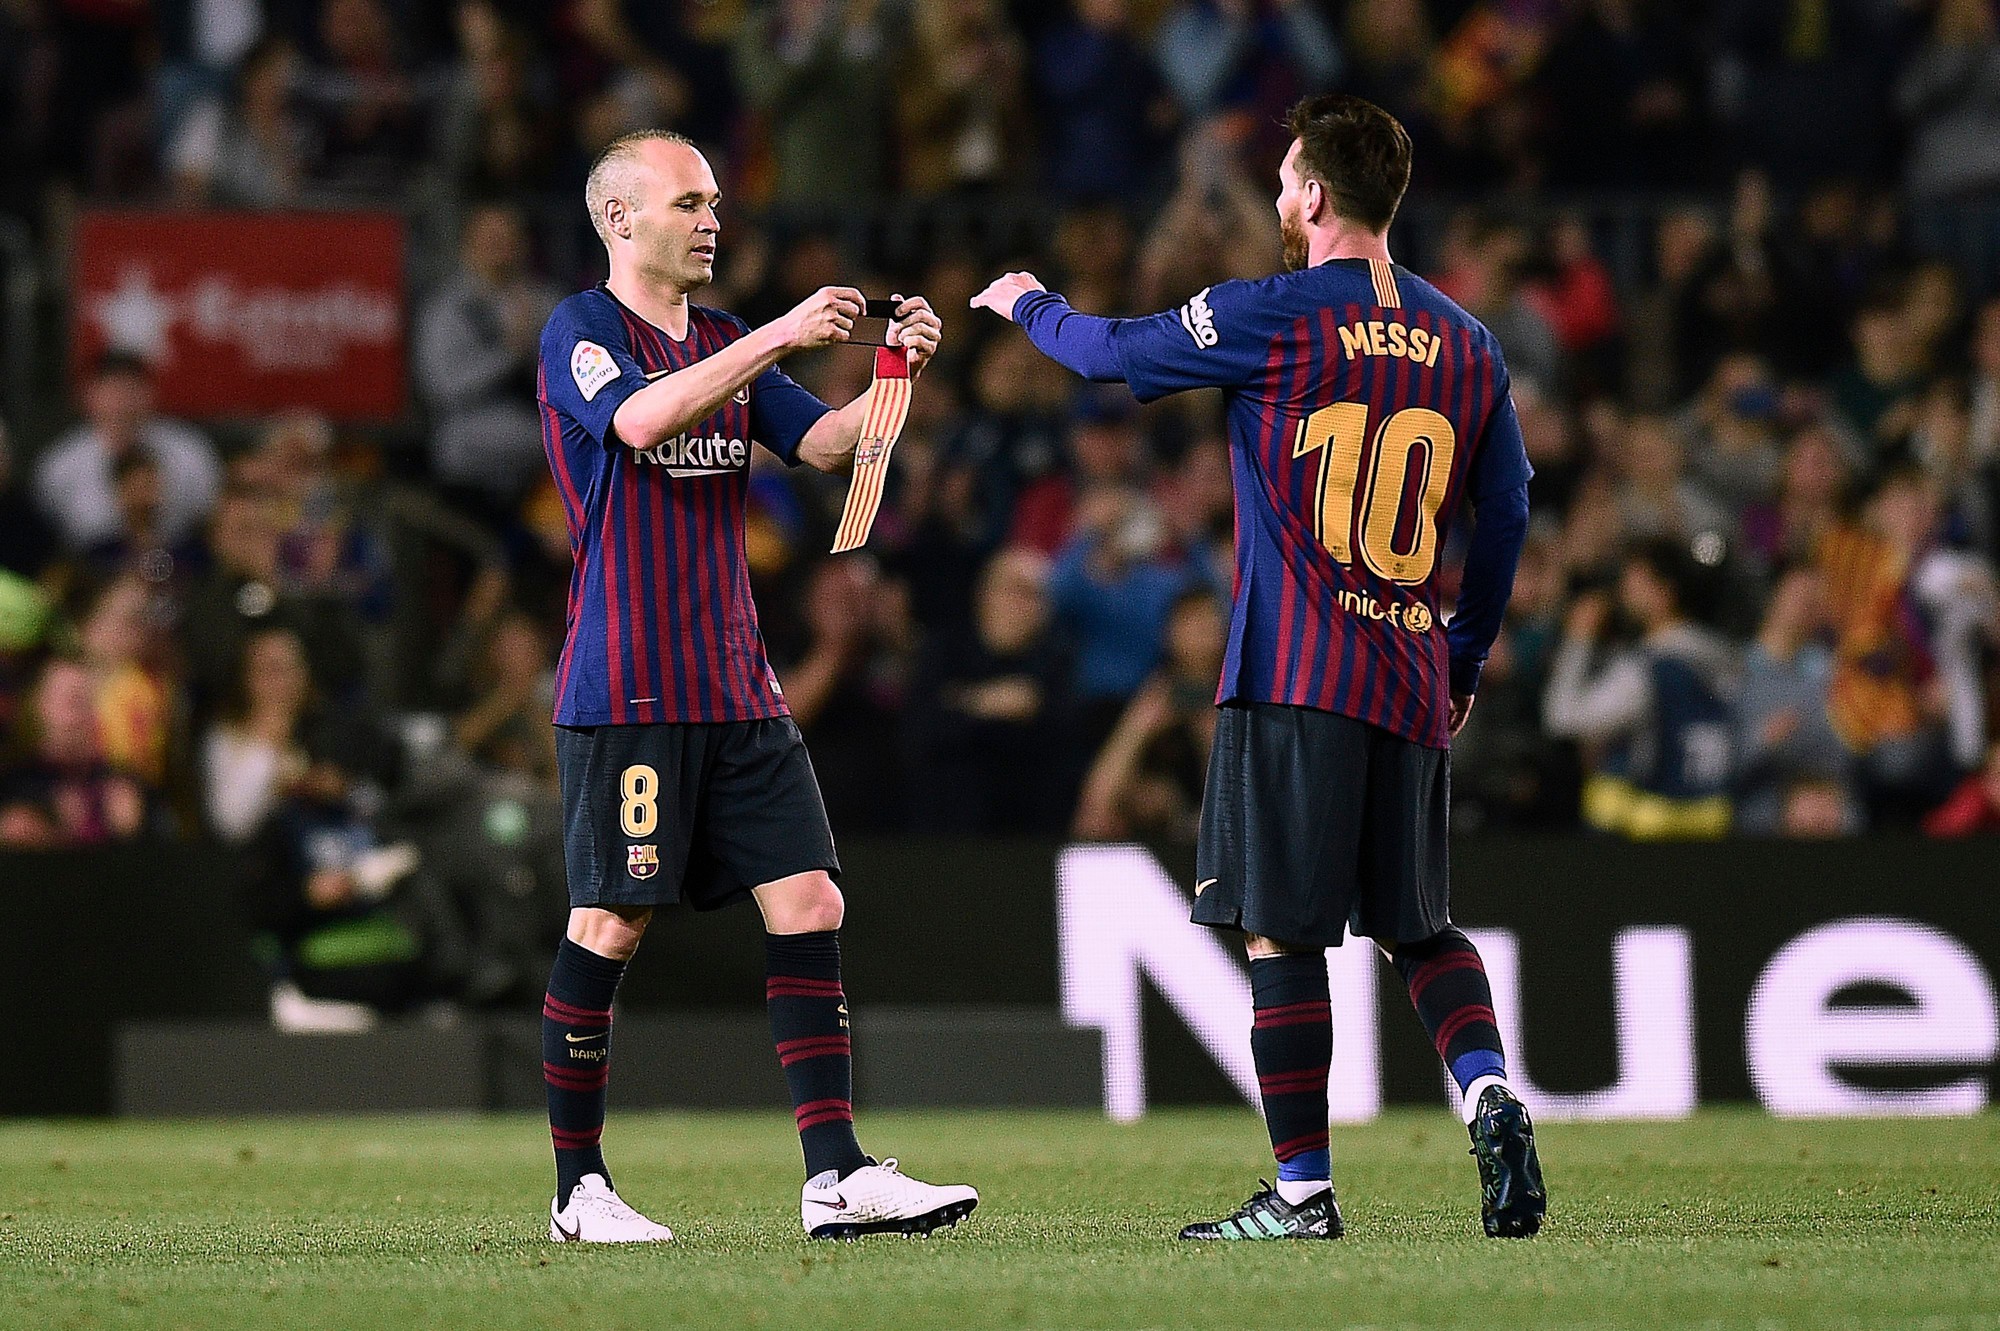 Từ vị trí thứ 4 Messi sẽ phá kỷ lục đeo băng thủ quân Barca? - Ảnh 1.